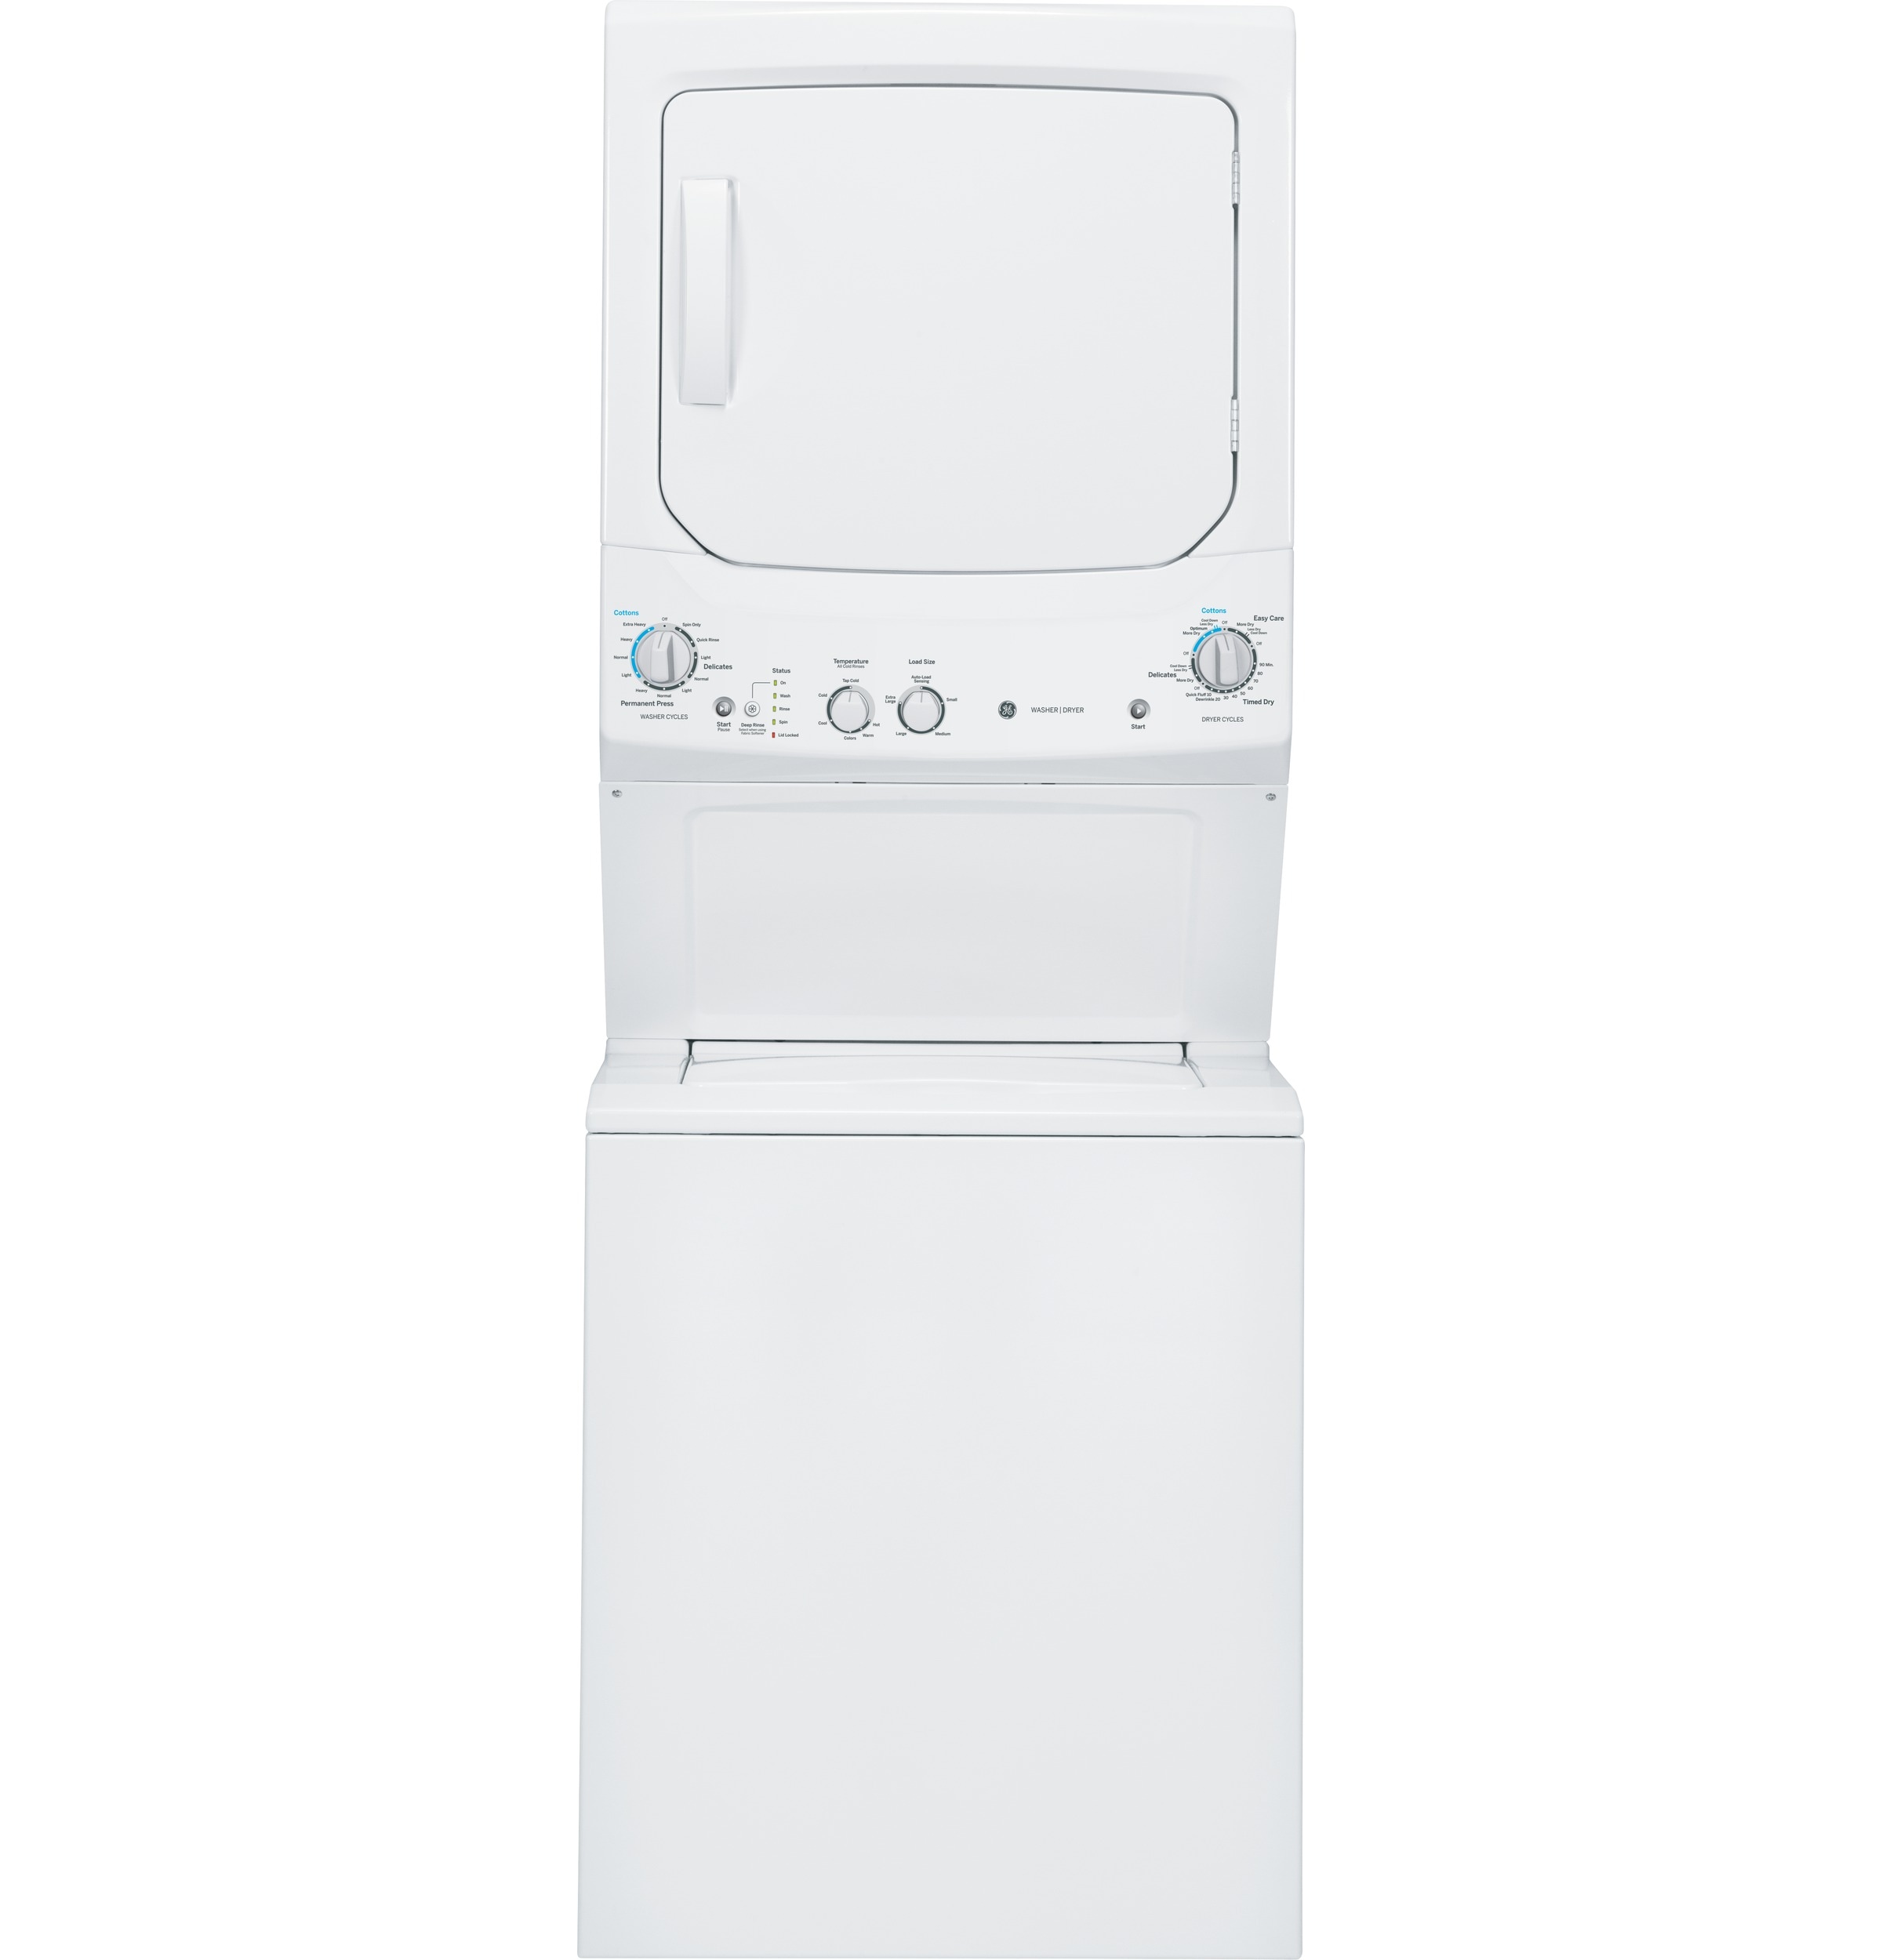 GE Appliances: Shop for Home, Kitchen, & Laundry Appliances